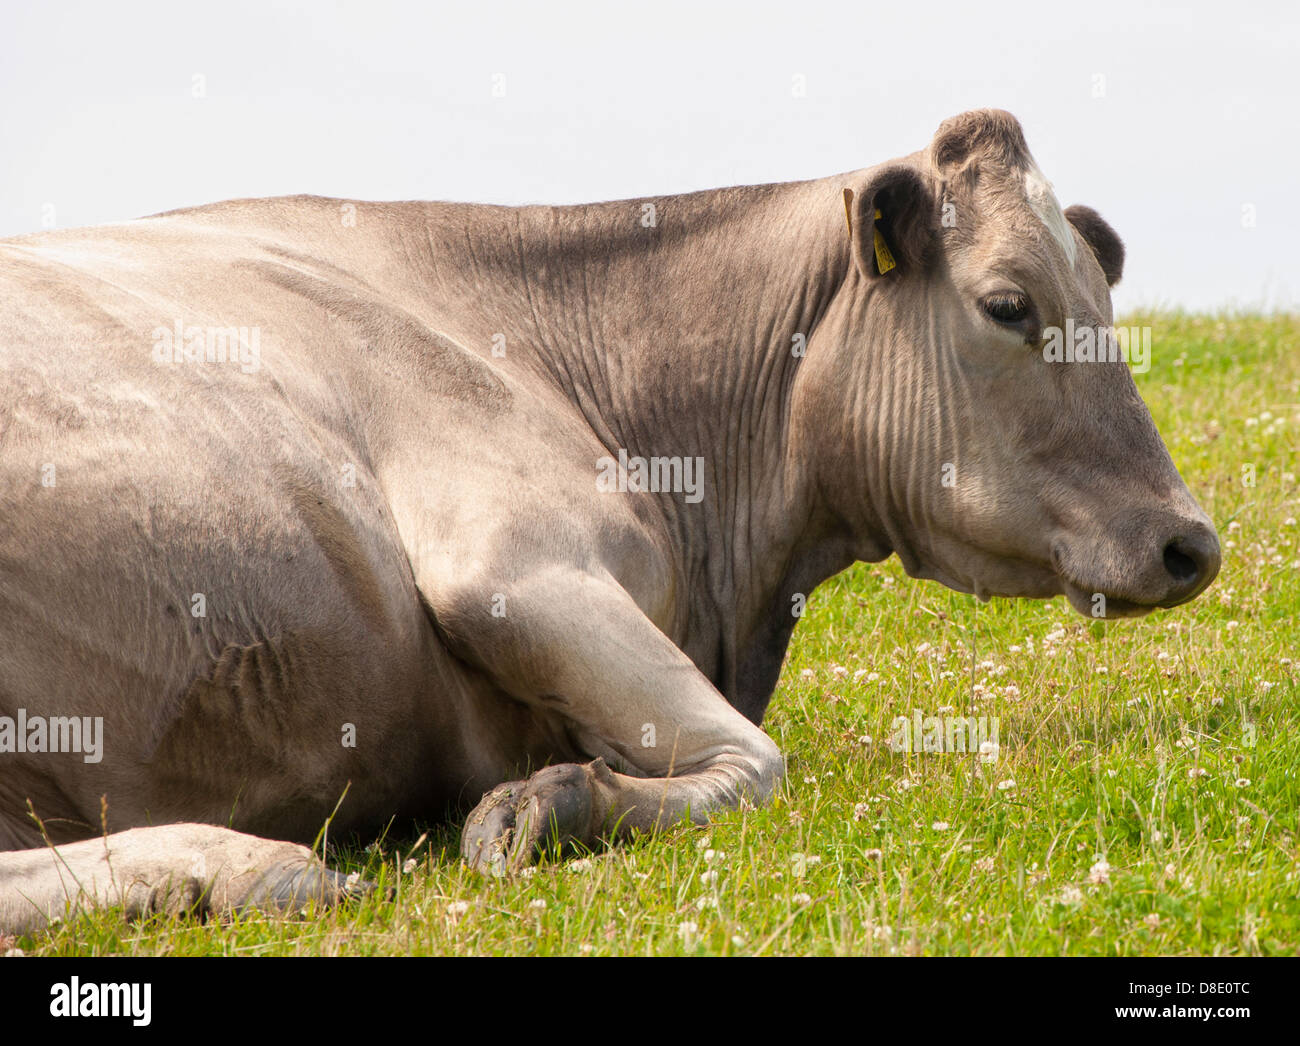 Mucca di razza incrociata (allevata utilizzando un toro Charolais su una mucca friesiana) Foto Stock